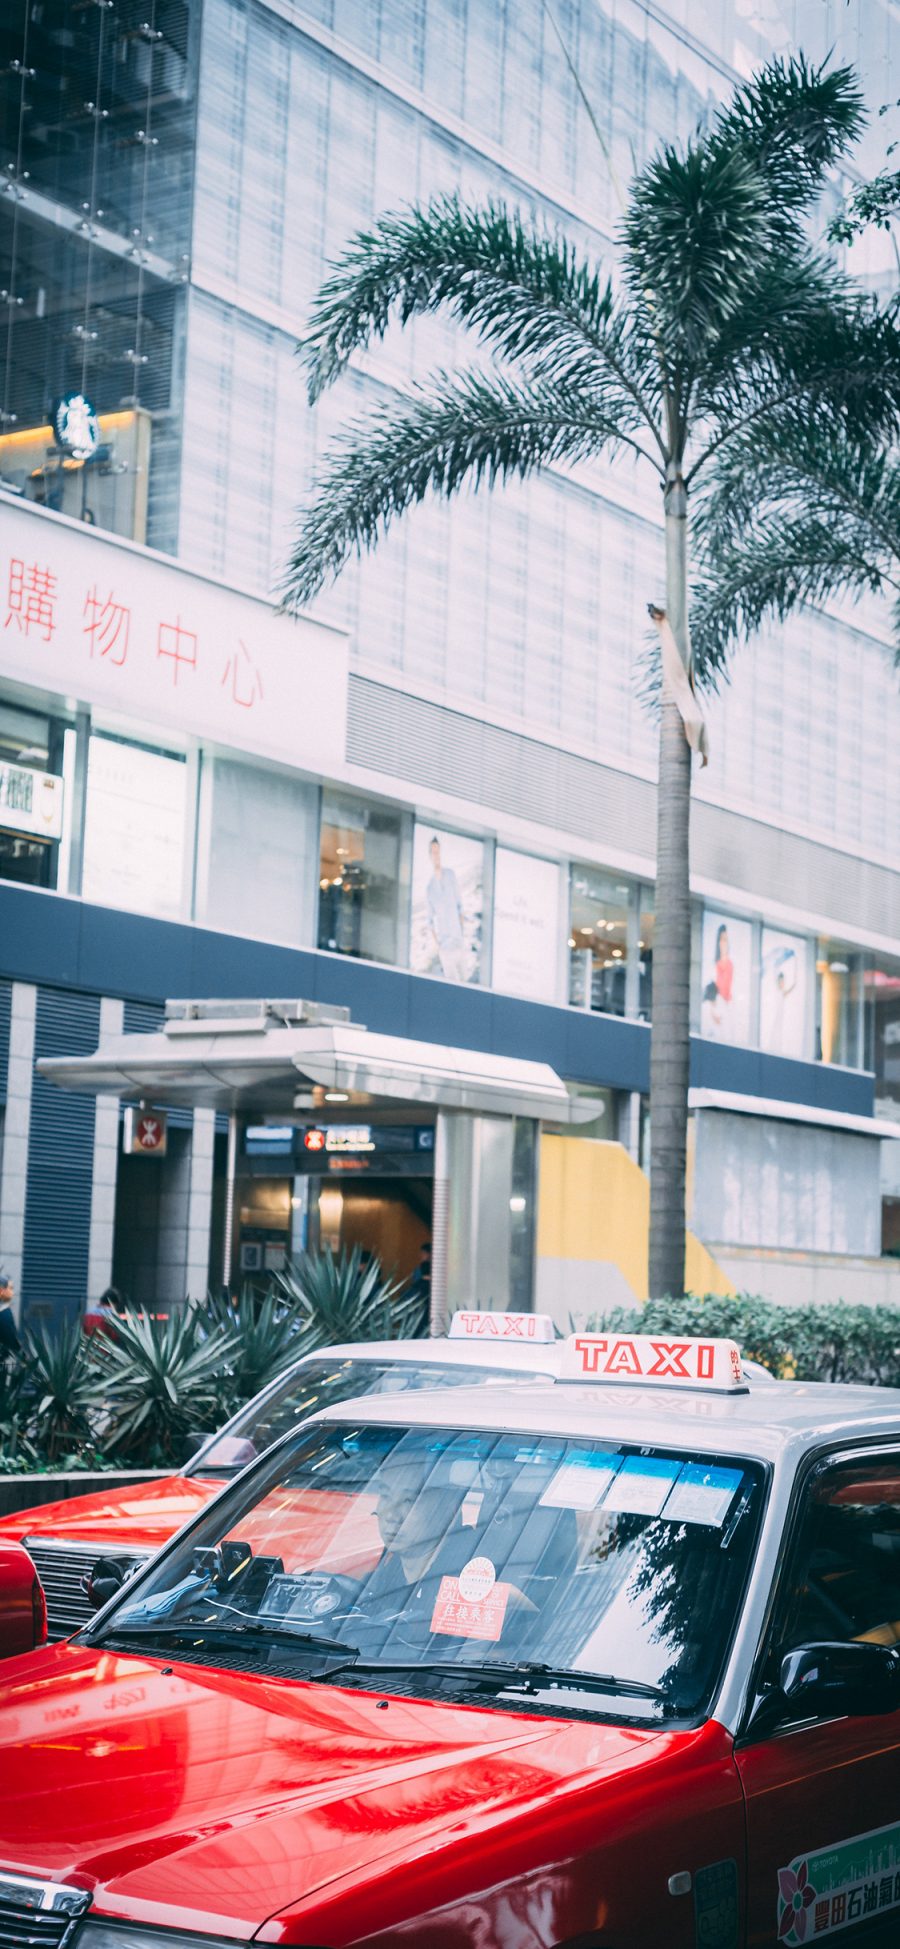 [2436×1125]街道 的士 香港 出租车 绿植 苹果手机壁纸图片